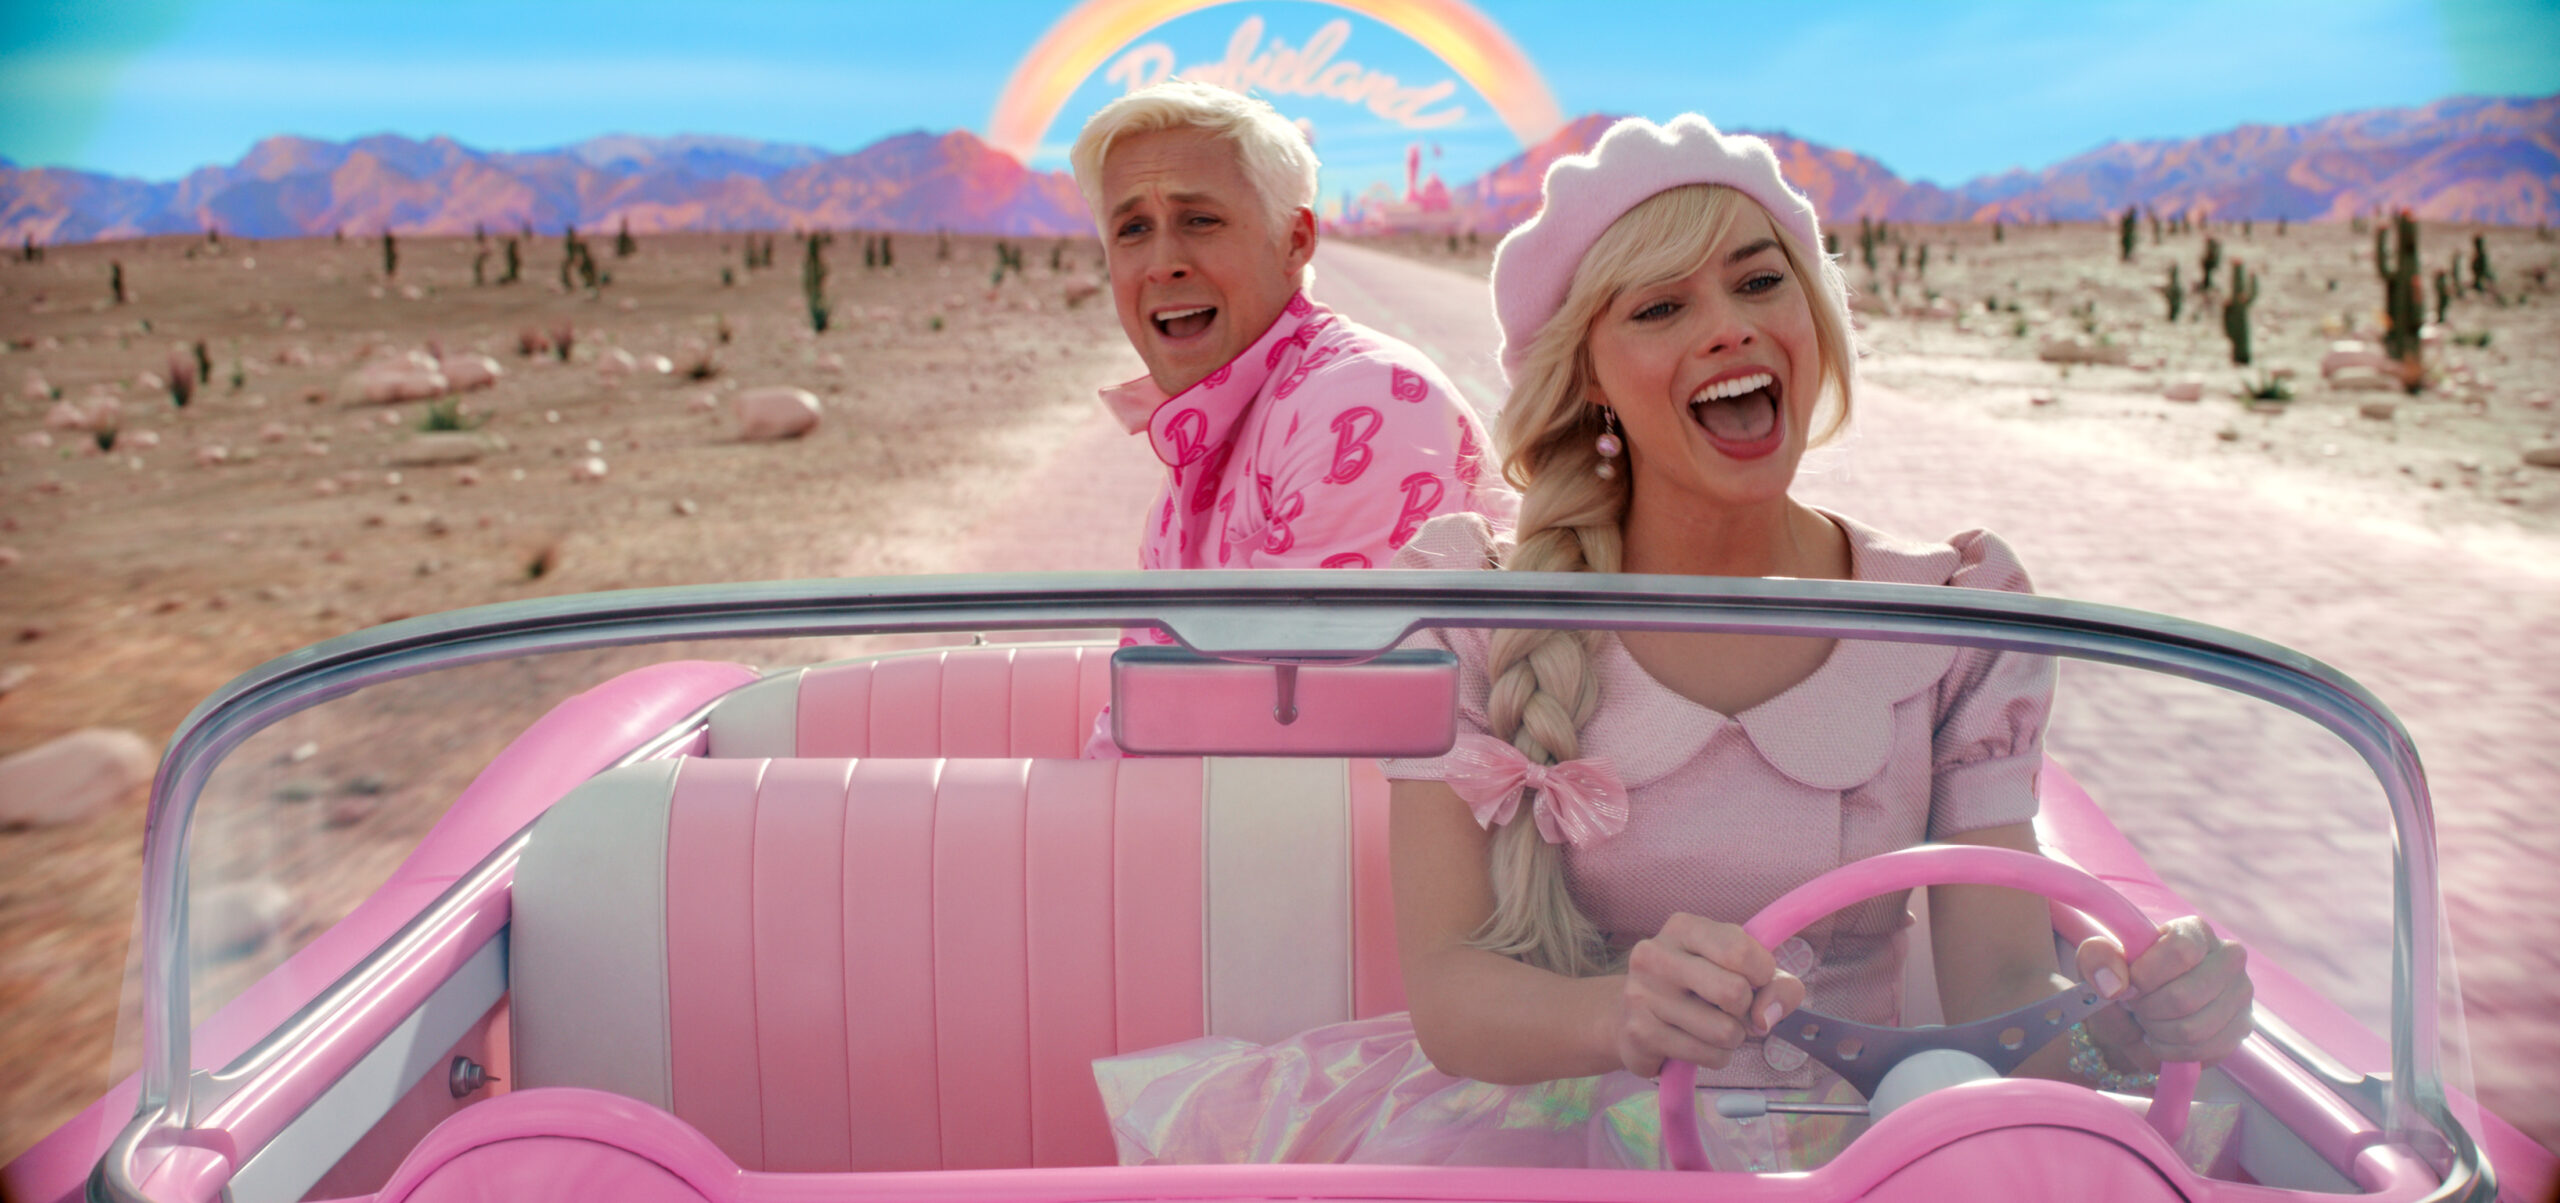 Ryan Gosling als Ken und Margot Robbie als Barbie in einer Szene des Films „Barbie“ (undatierte Filmszene).